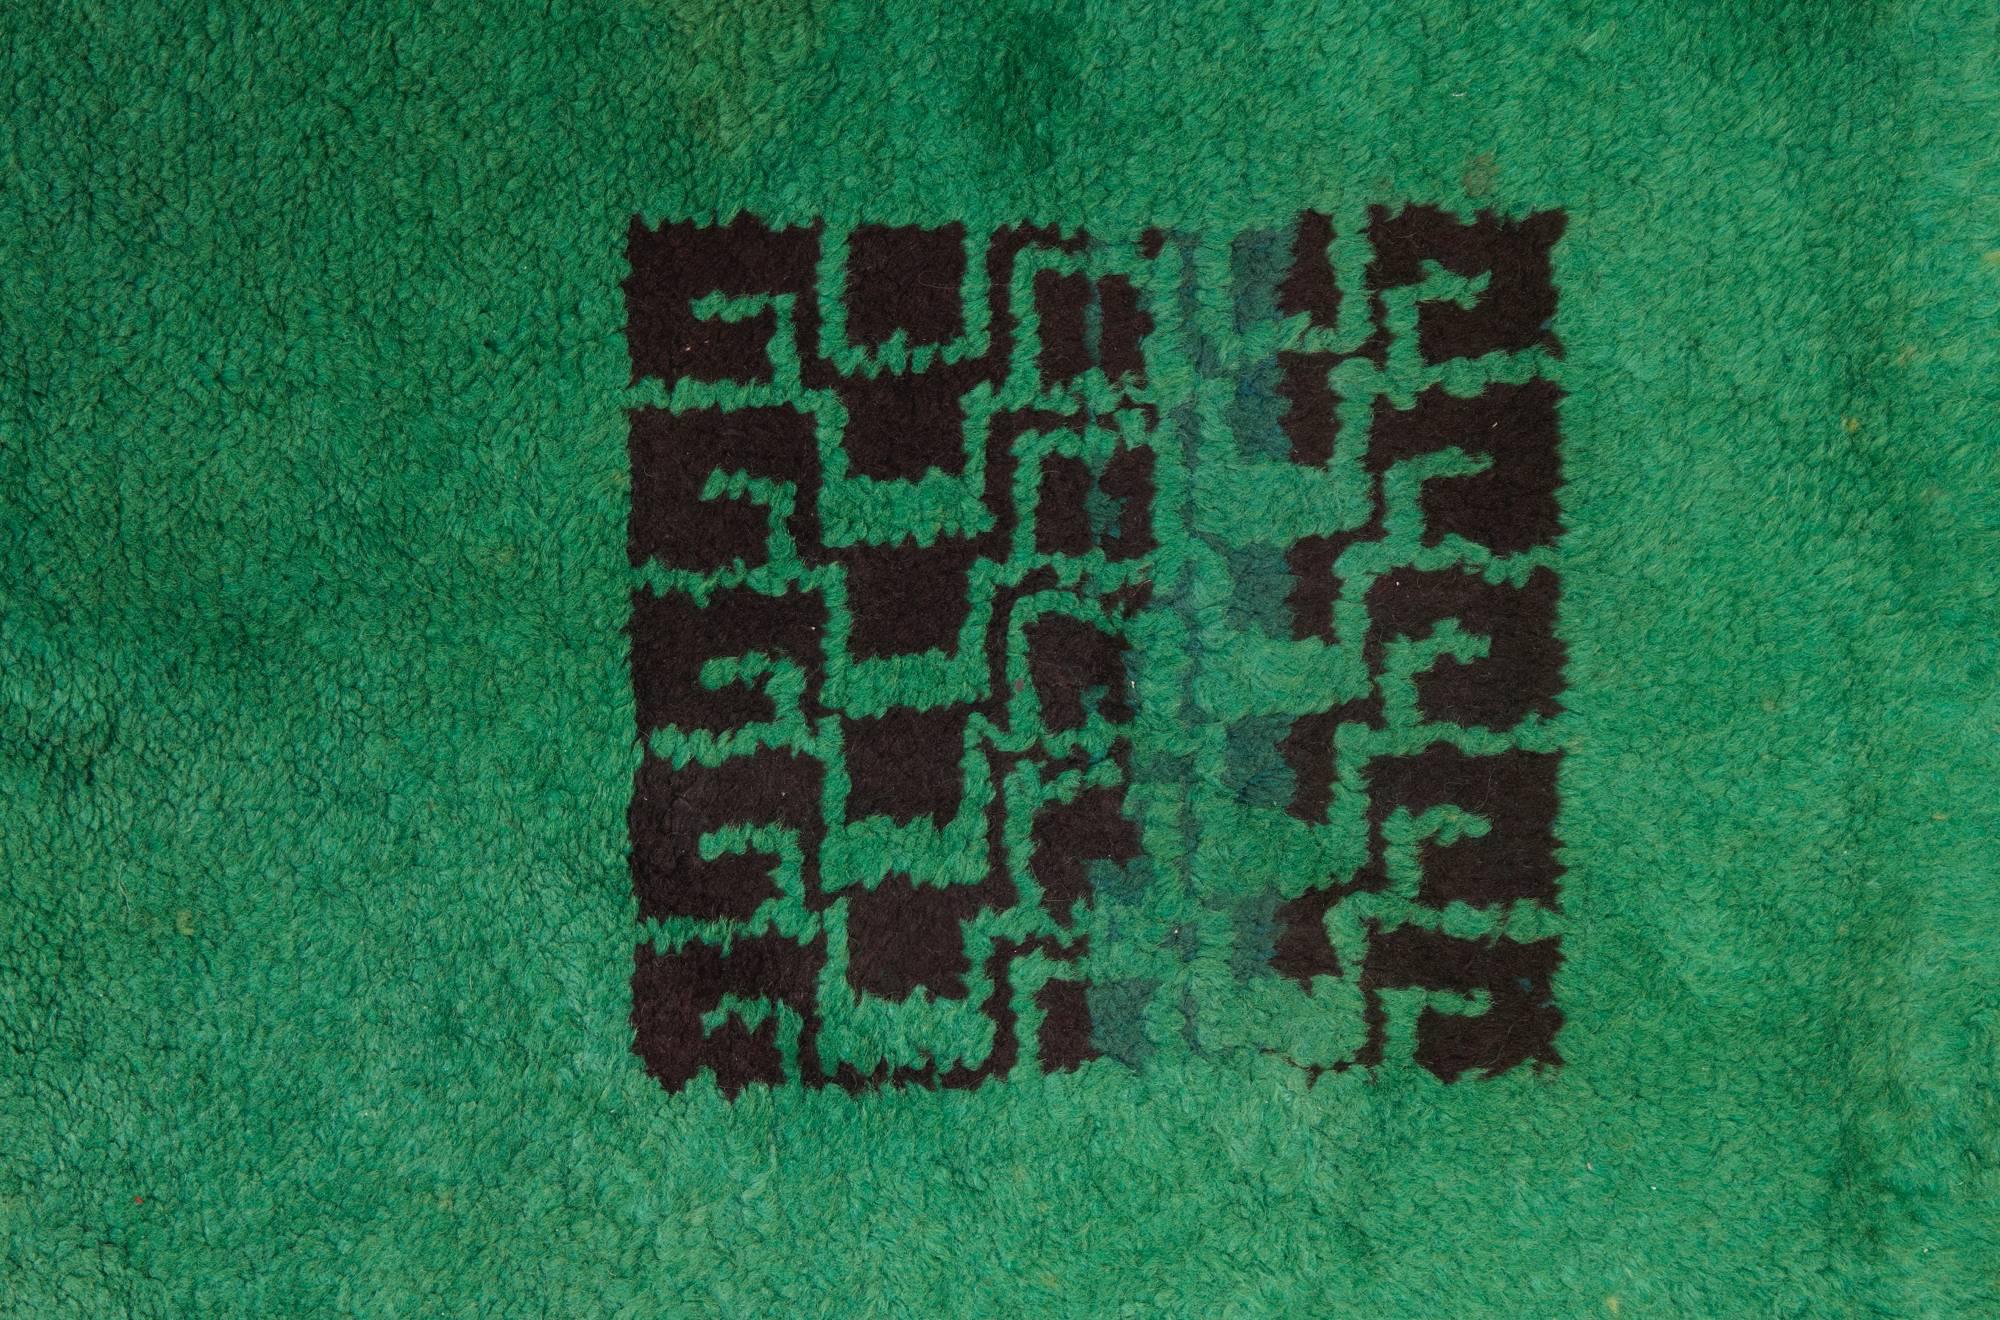 Un rare grand tapis rectangulaire en laine nouée avec une décoration géométrique noire sur un fond vert. Signé du monogramme 